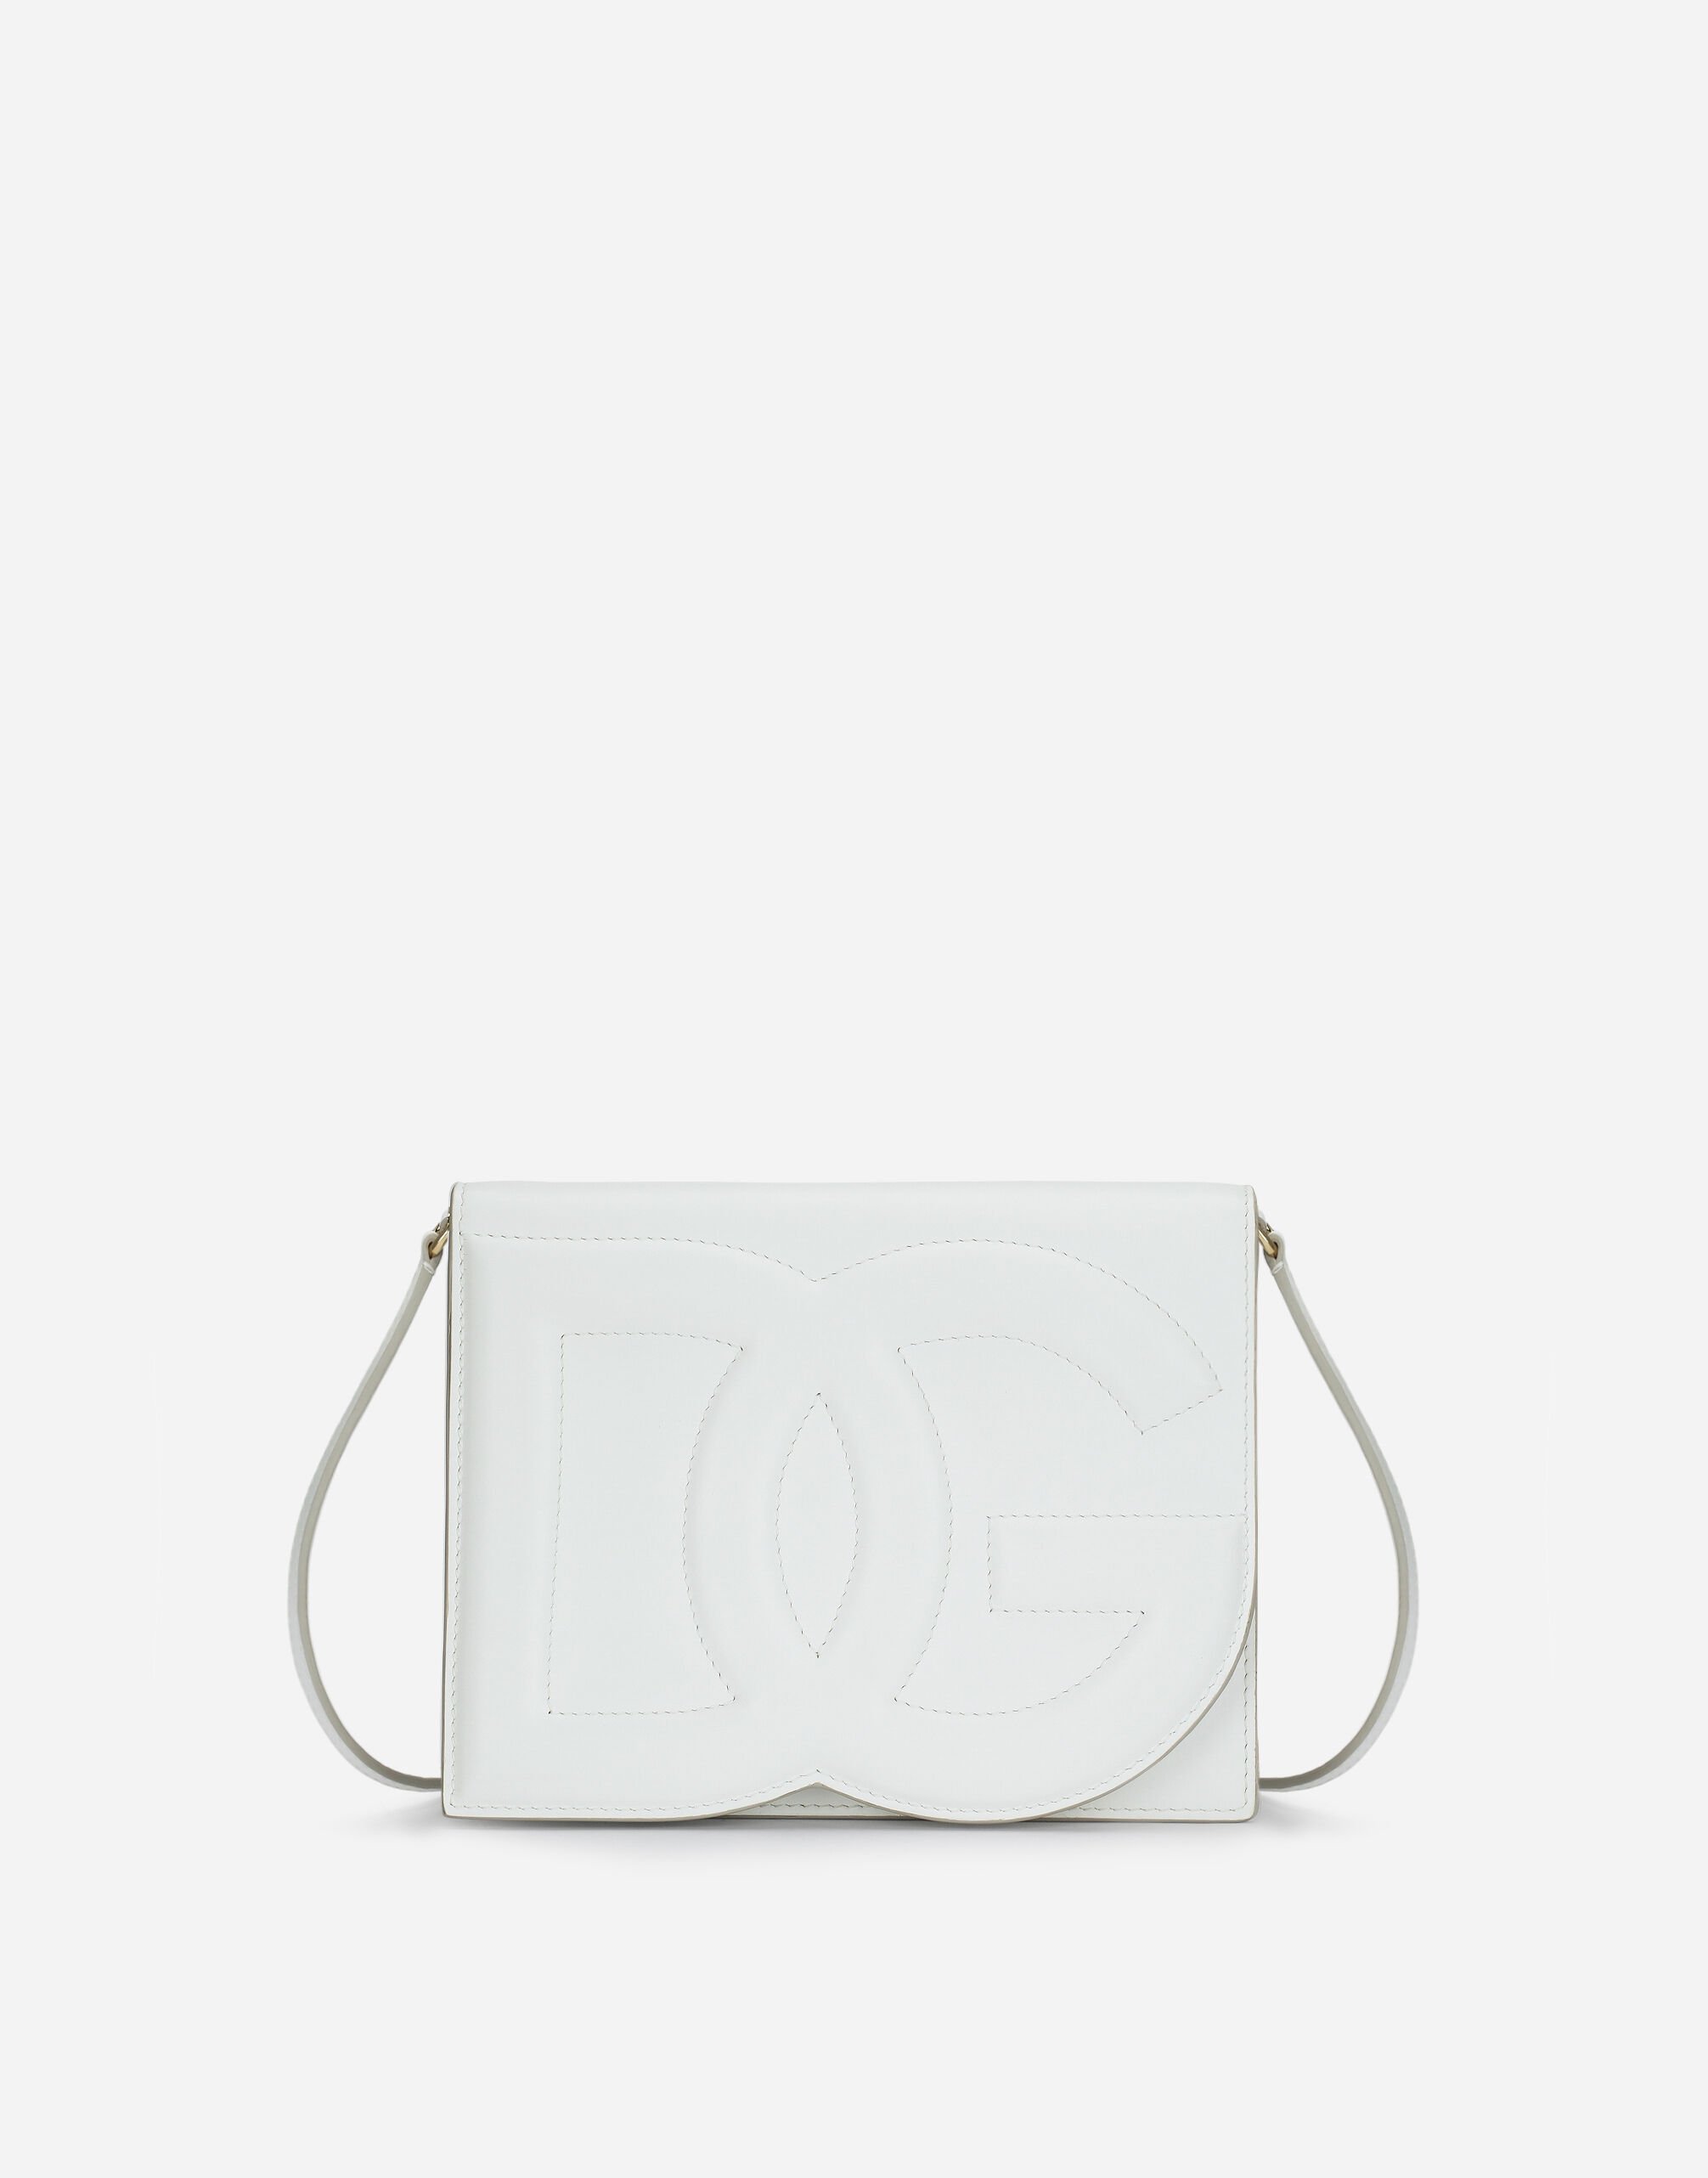 Dolce & Gabbana Calfskin DG Logo Bag crossbody bag Black BB6711AV893